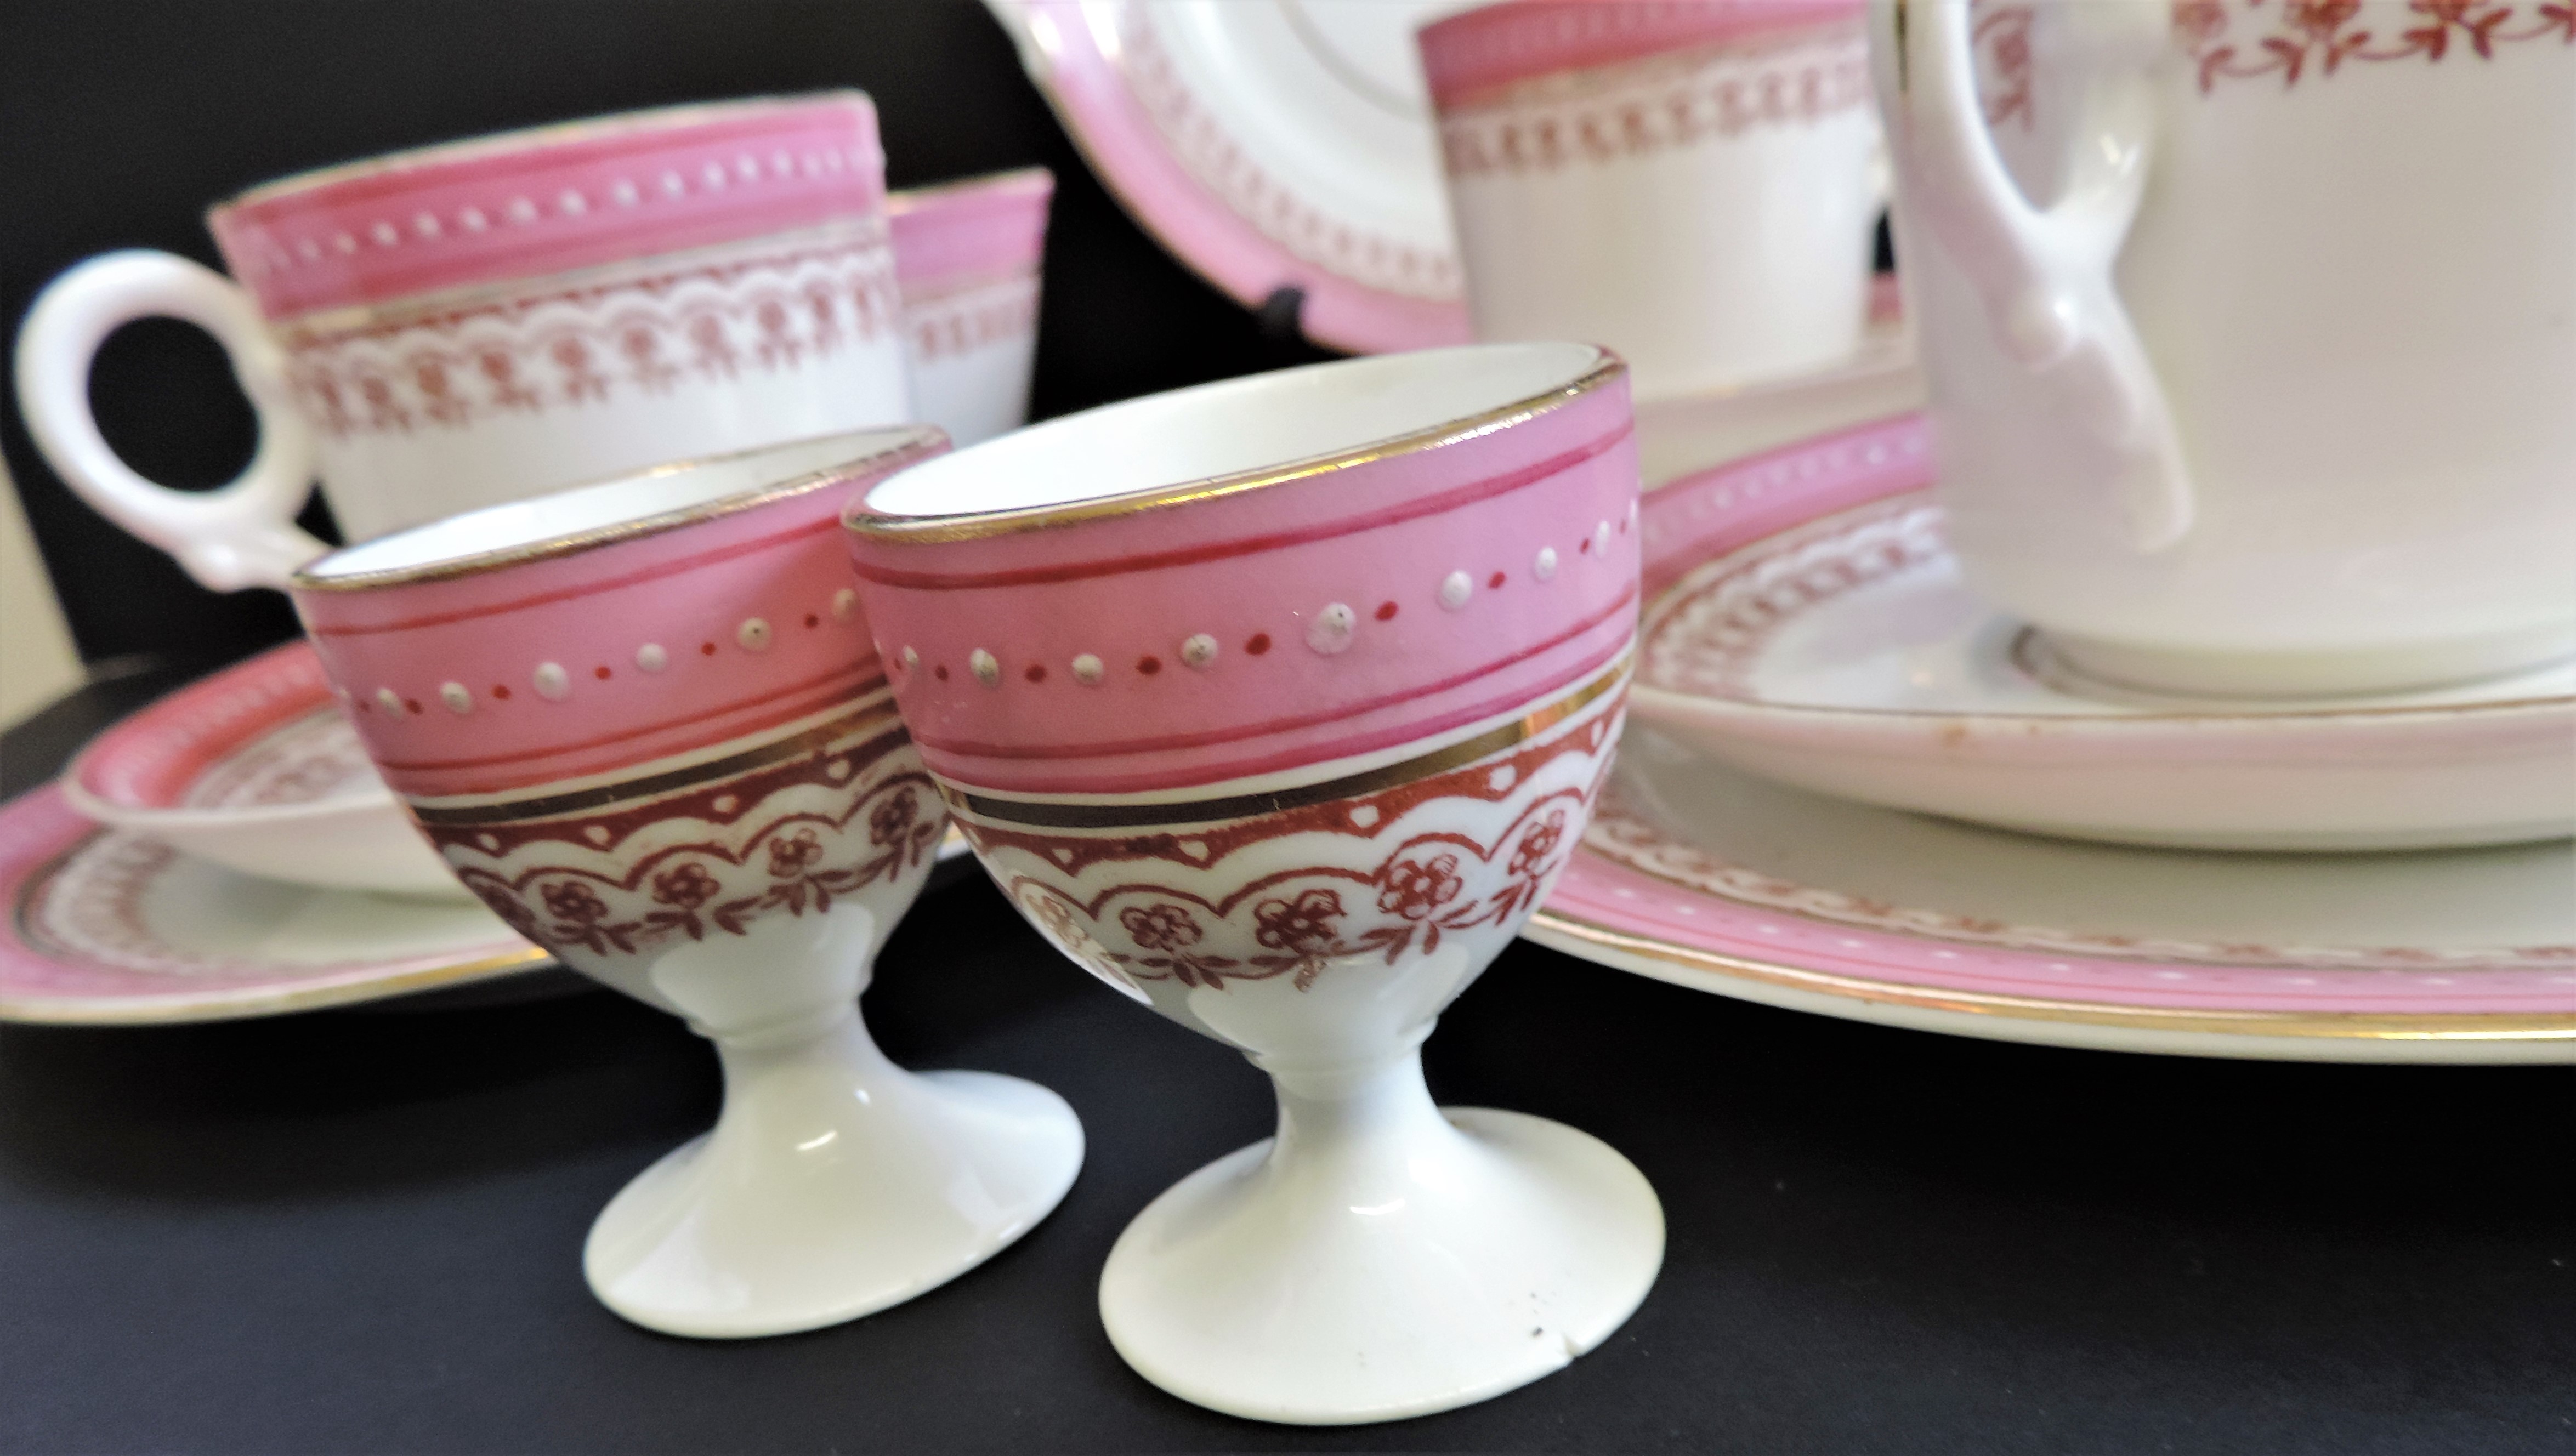 Vintage 19 piece Porcelain Breakfast/Tea Set for 4 People - Image 7 of 24